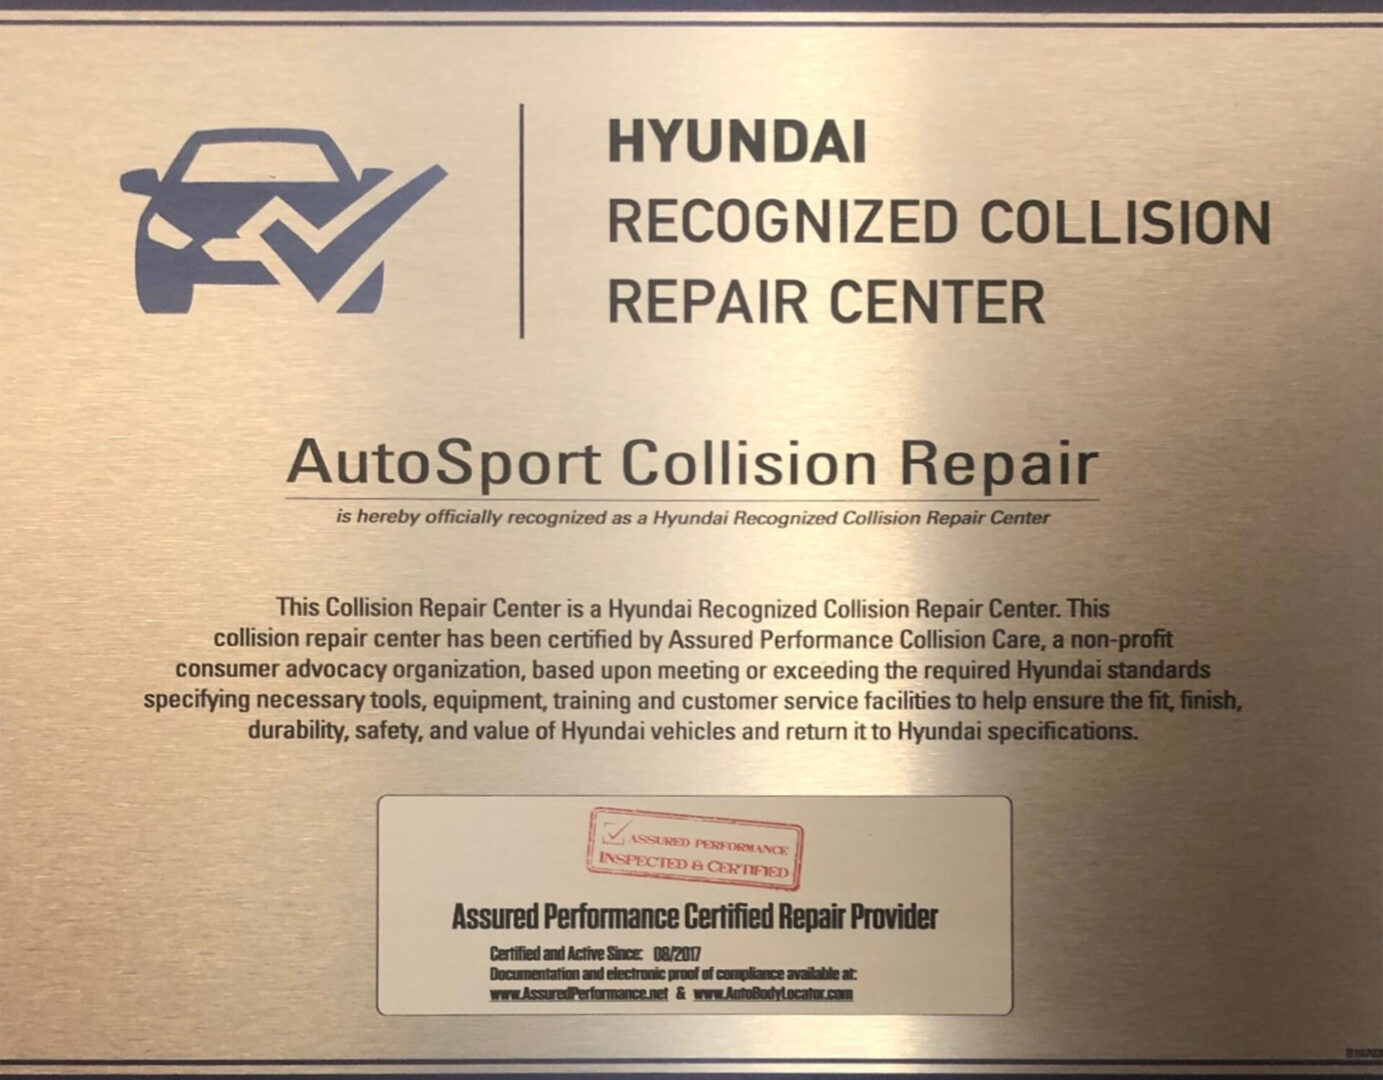 https://autosportcollisionrepair.com/wp-content/uploads/2021/07/Hyundai-1-scaled.jpg